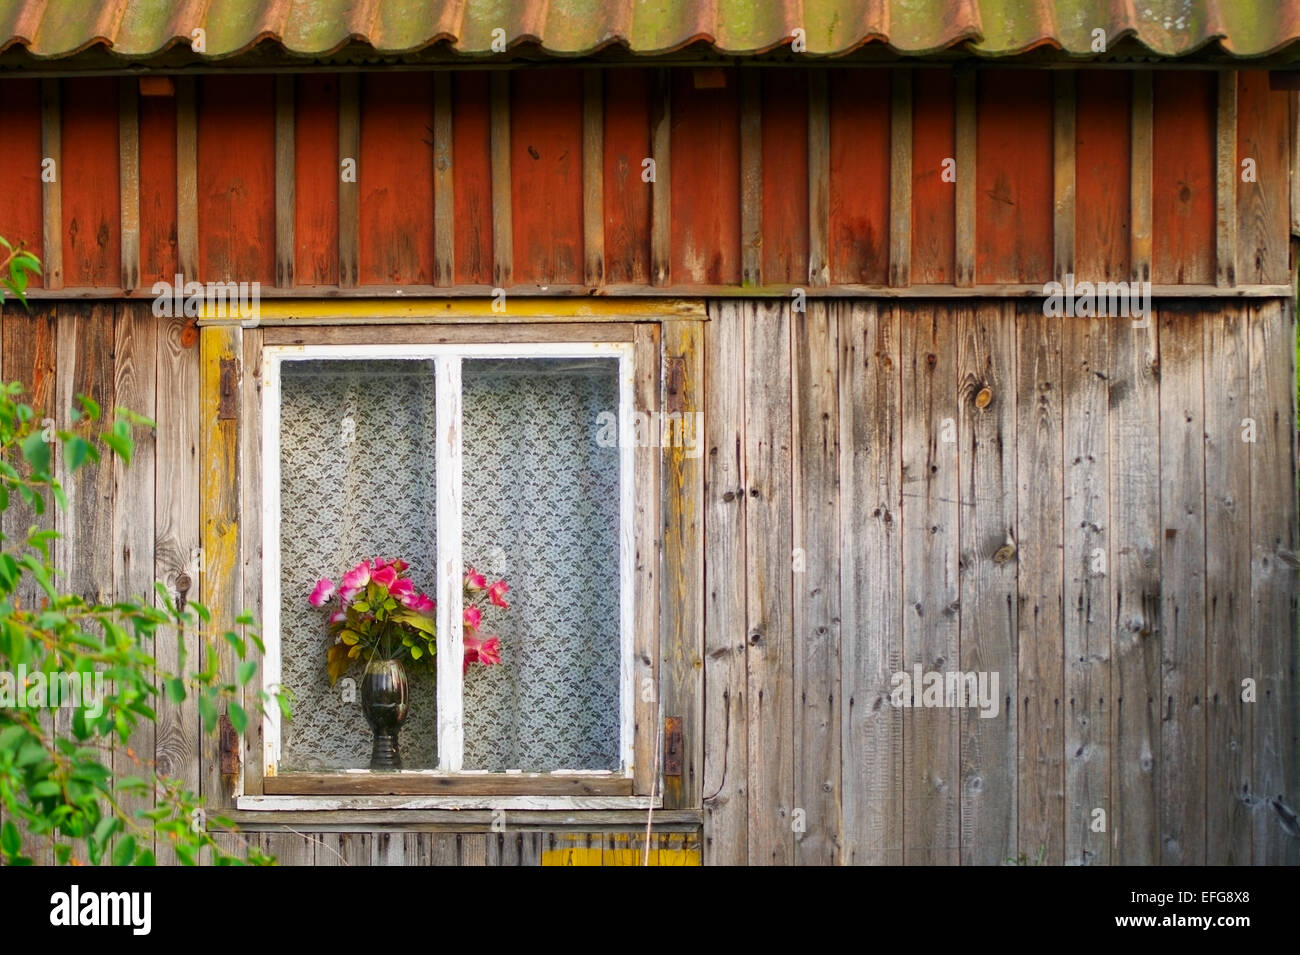 Fenster einer alten hölzernen Häuschen mit roten Rosen in einer Vase. Pommern, Polen. Stockfoto